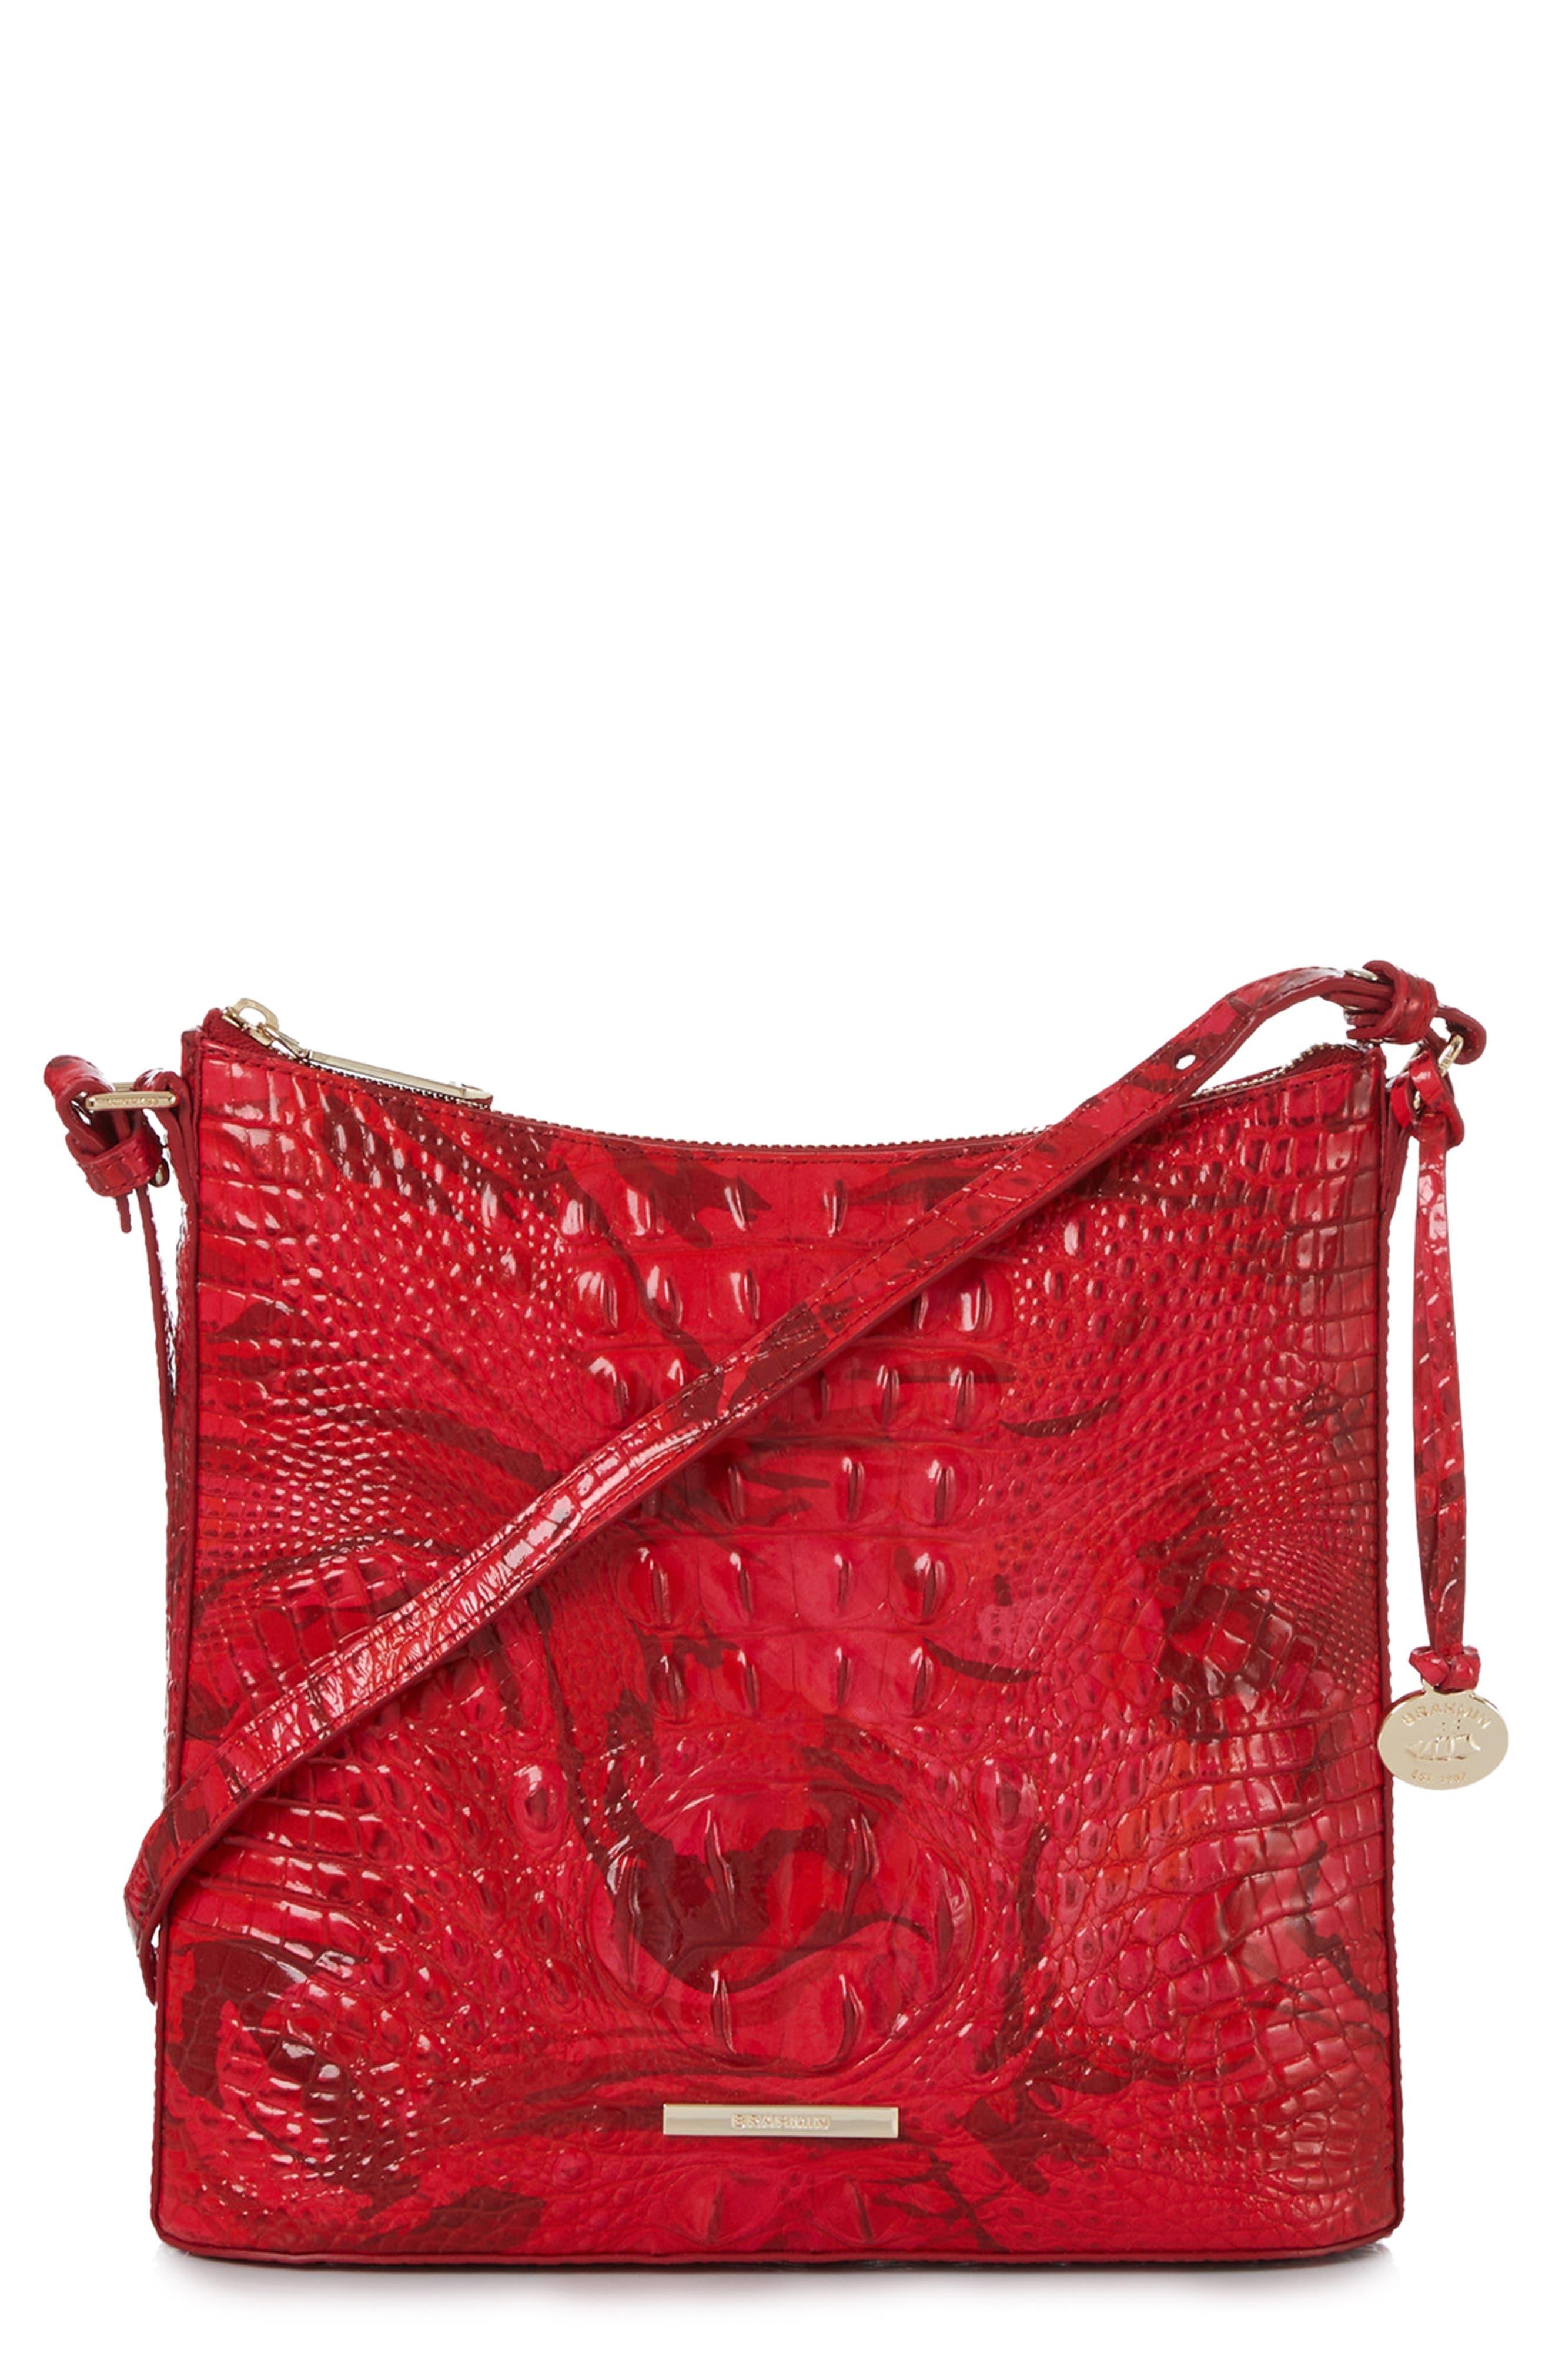 Brahmin Katie Croc Embossed Leather Crossbody Bag in Red | Lyst